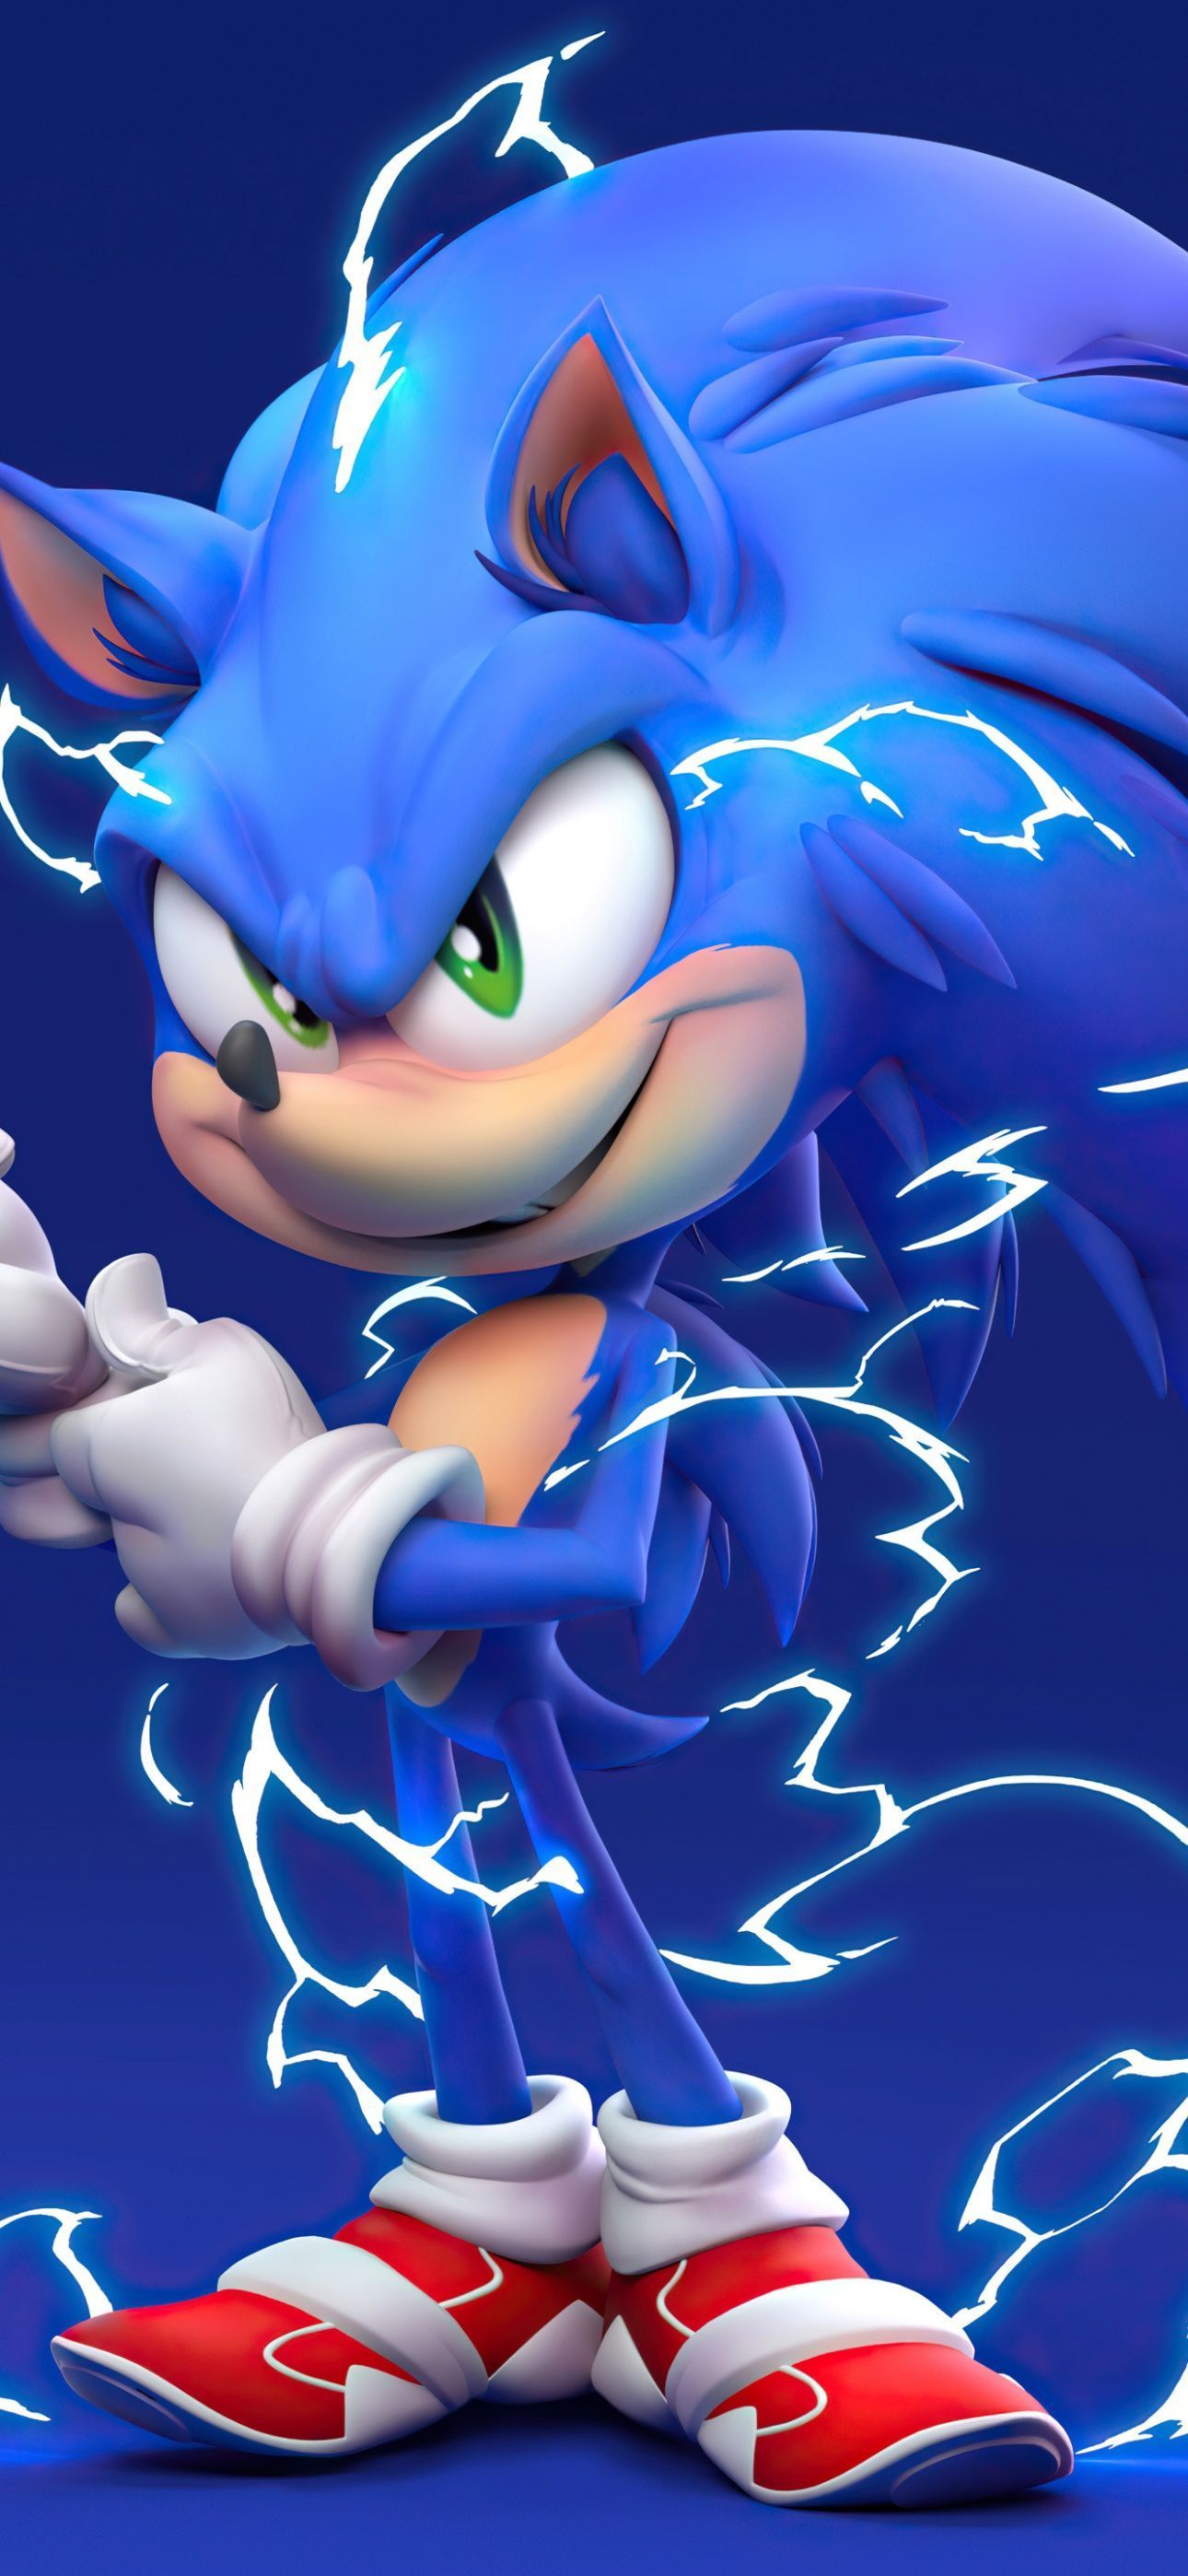 Sonic the Hedgehog Wallpaper 4K, Blue background, 5K